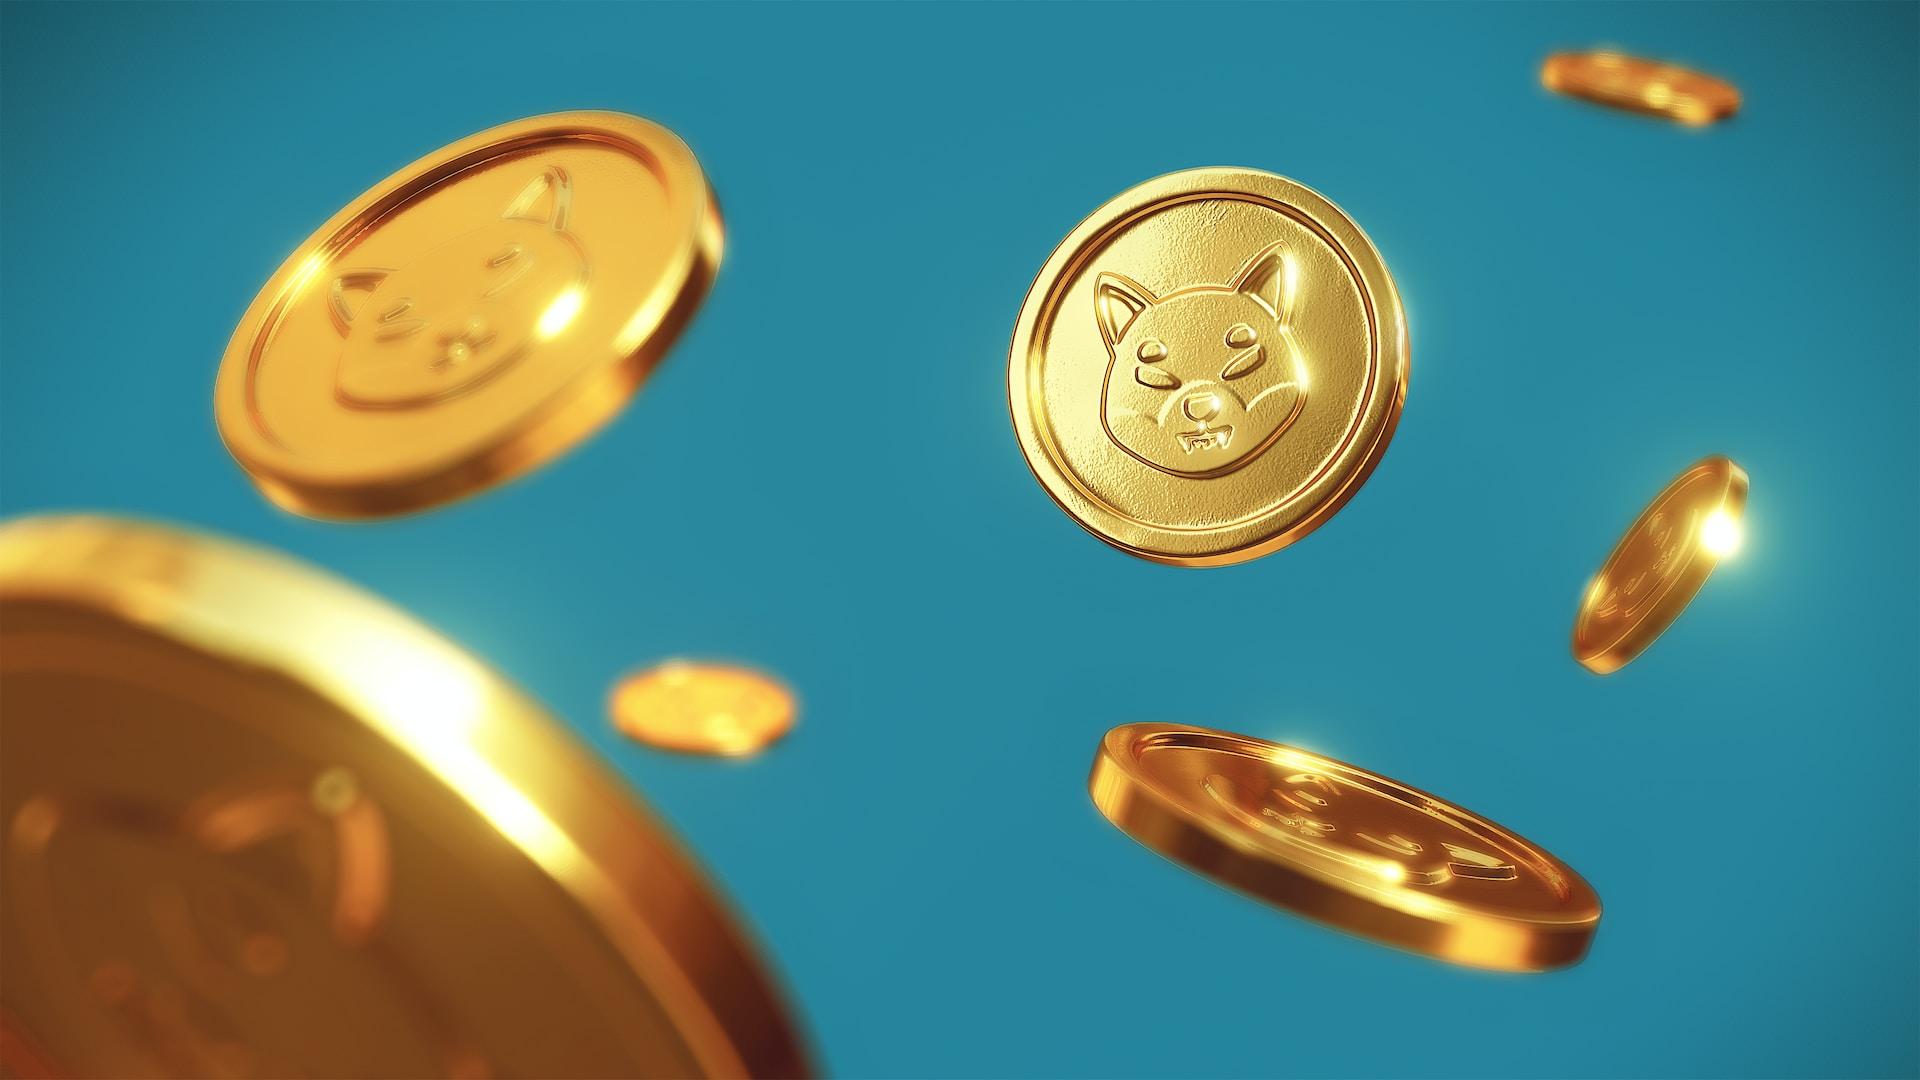 Will Shiba Inu Coin Reach 1? Shiba Inu Price Prediction CoinCheckup